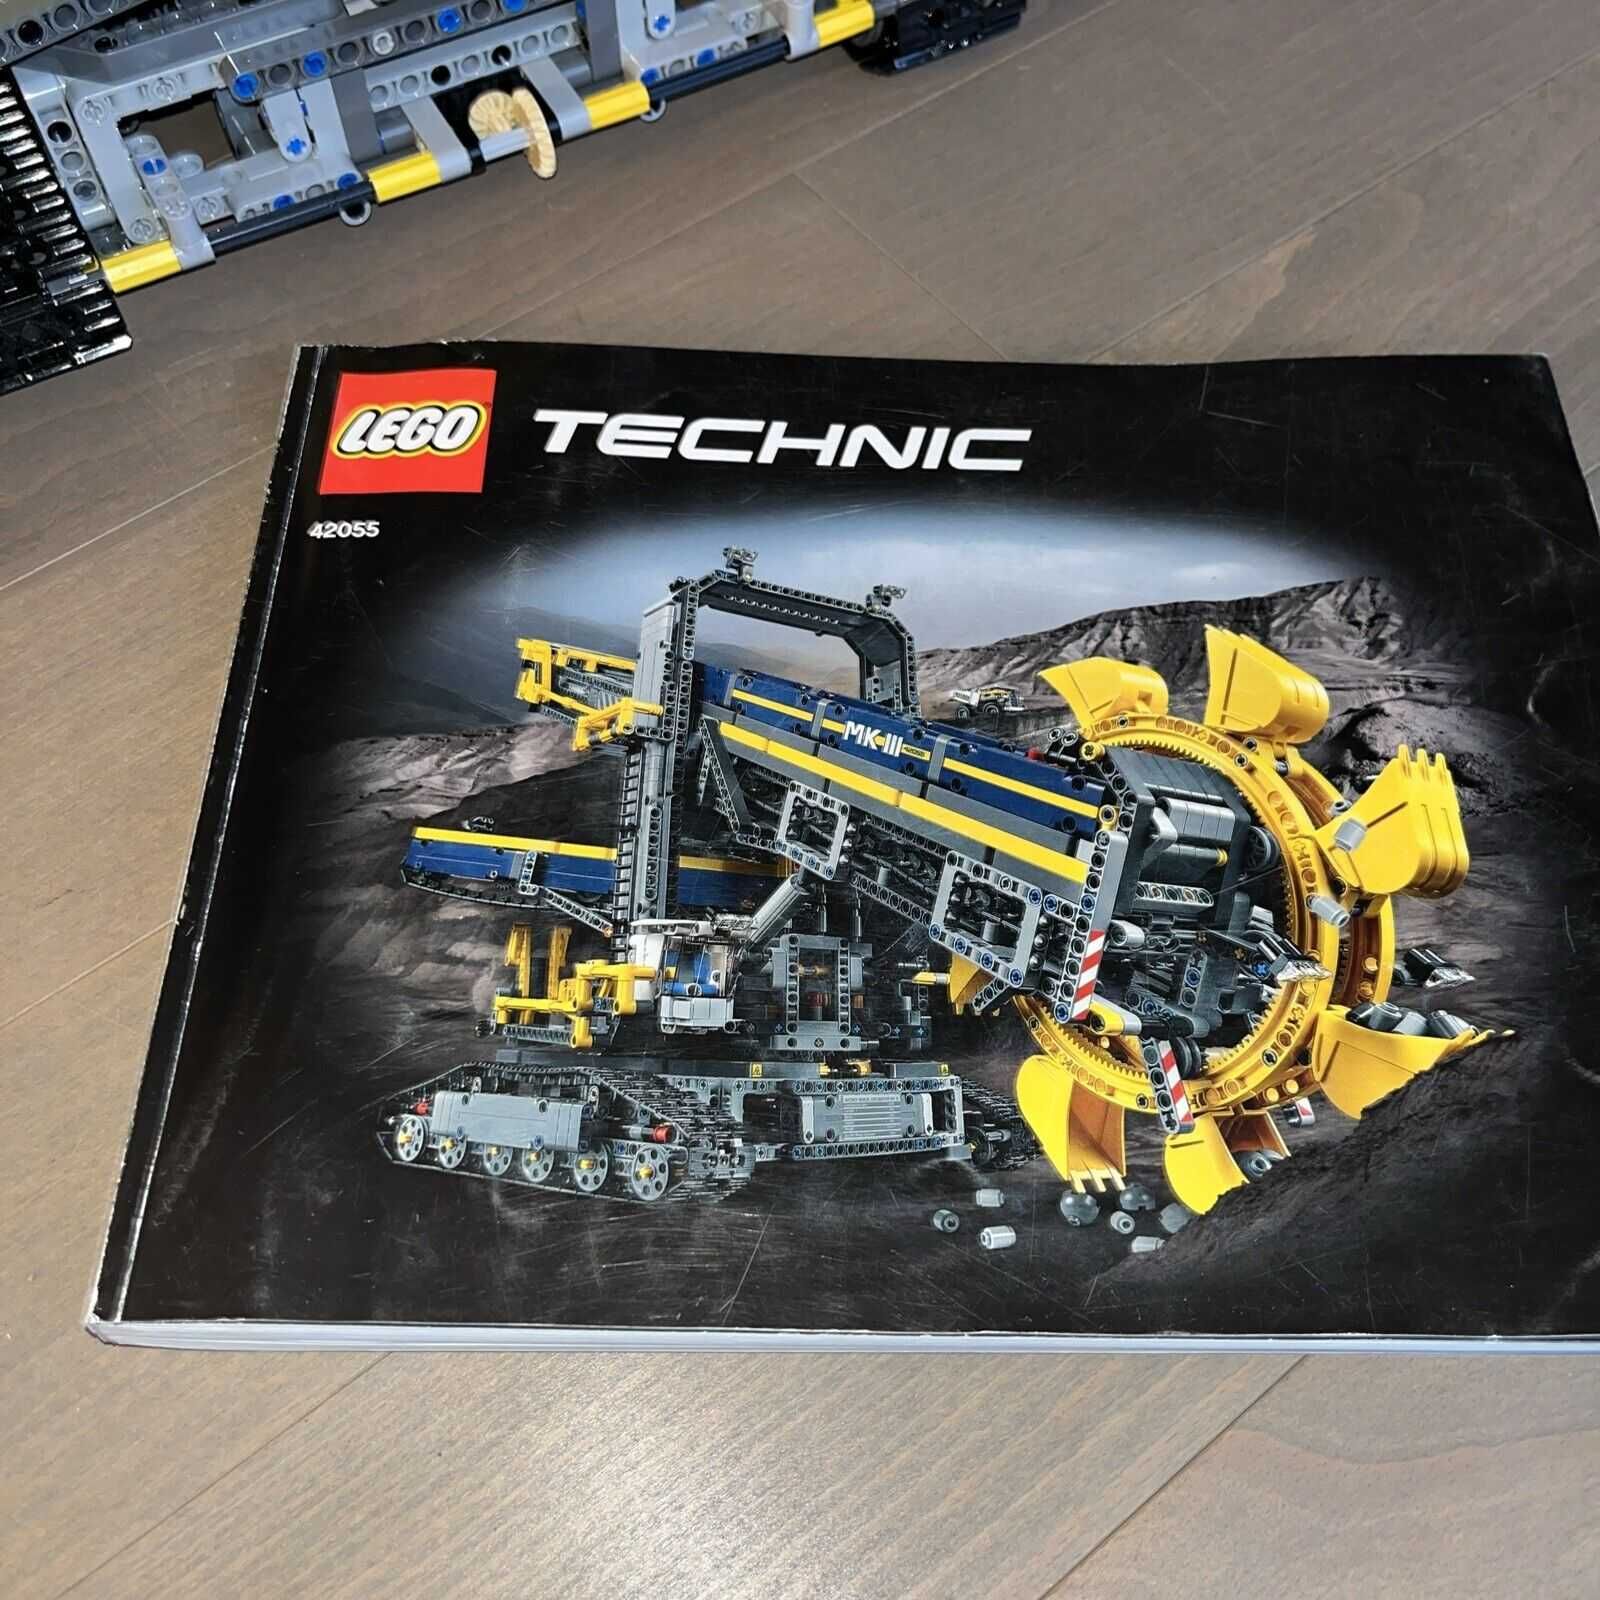 LEGO Technic 42055 koparka górnicza nowa zlozona